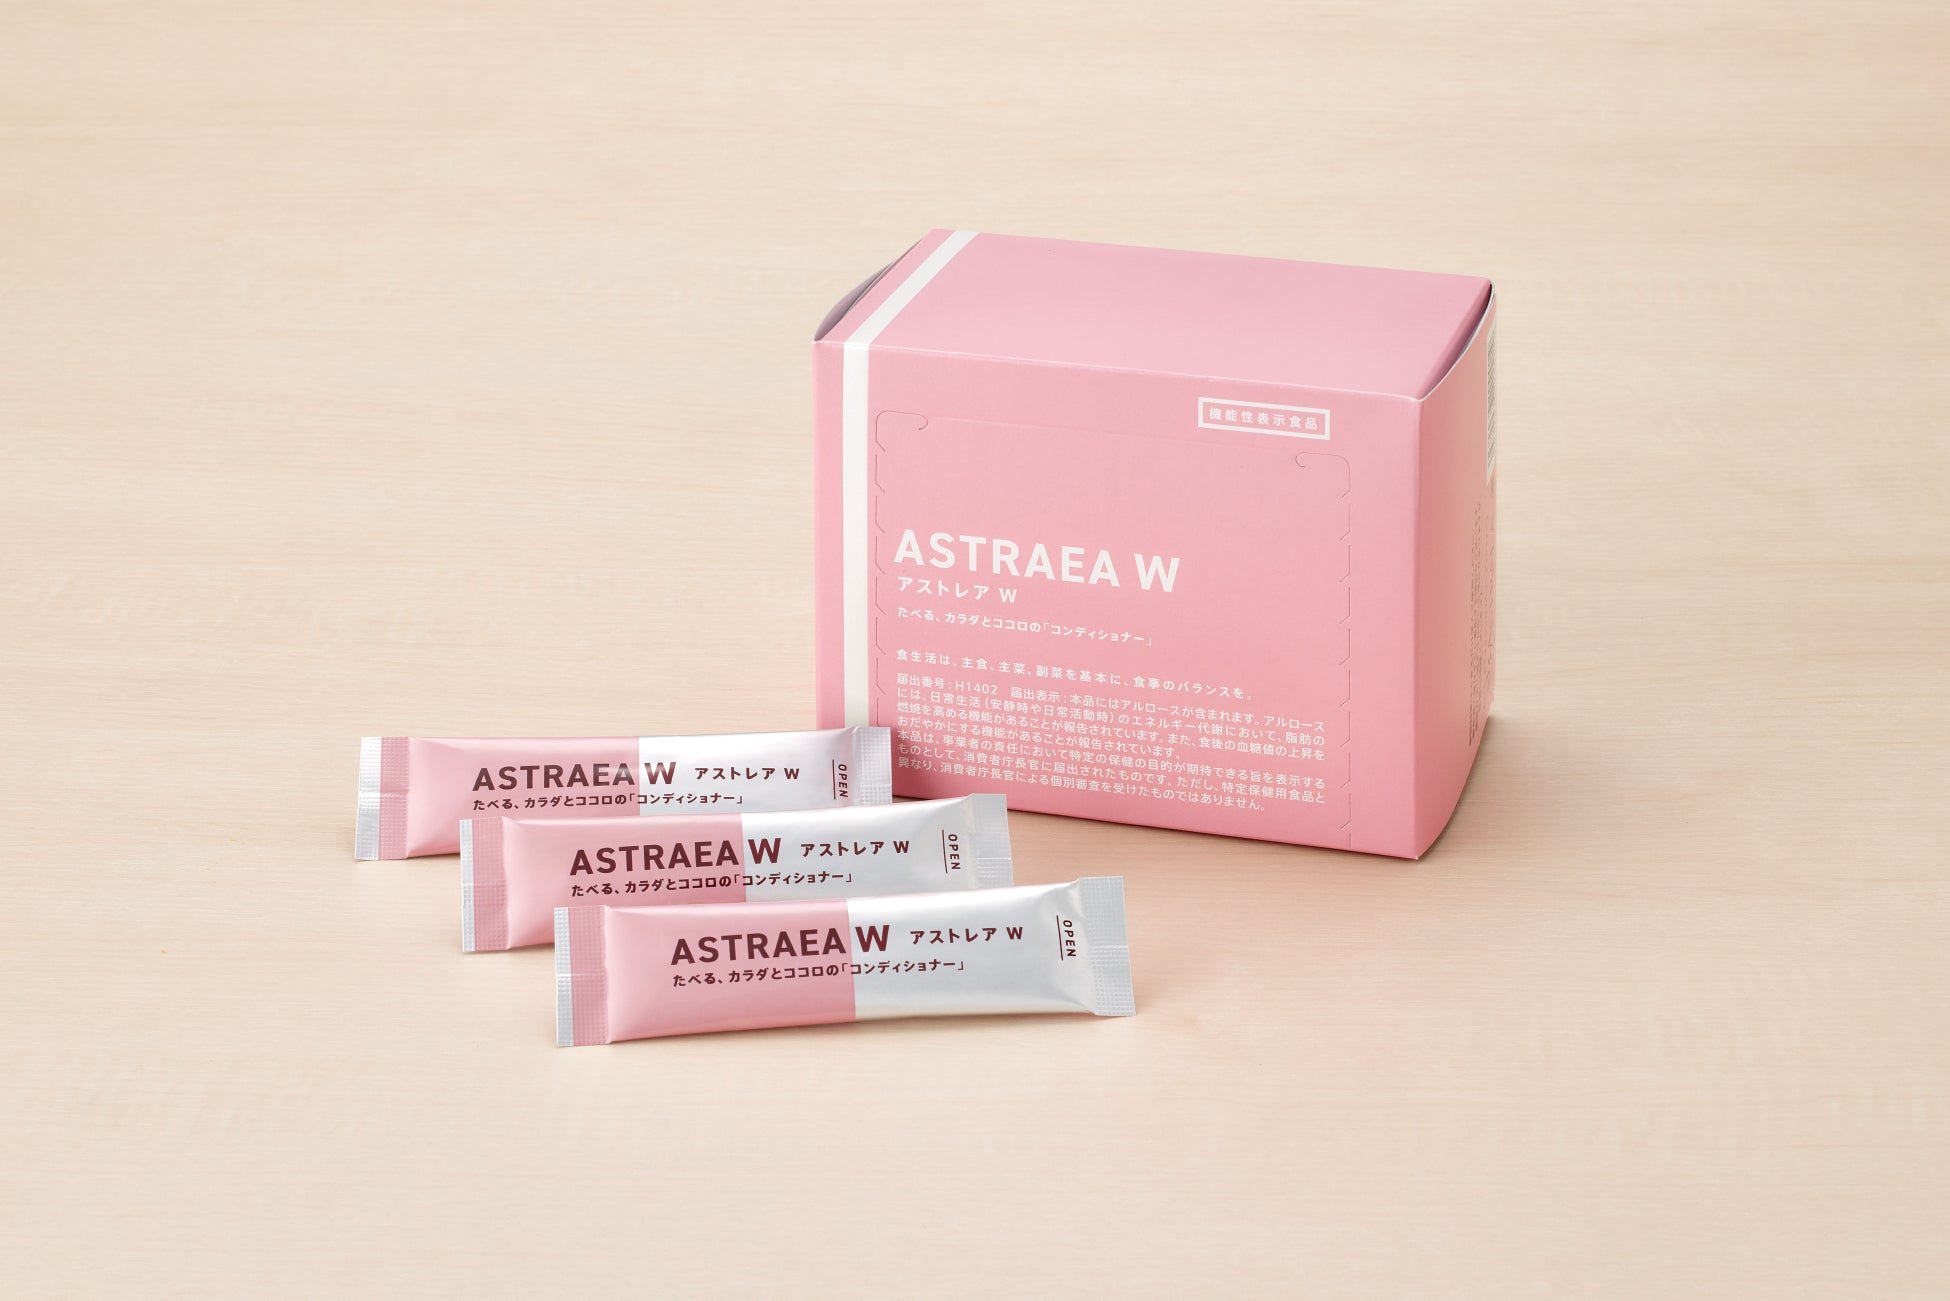 希少糖アルロースの機能性表示食品「ASTRAEA W」新発売